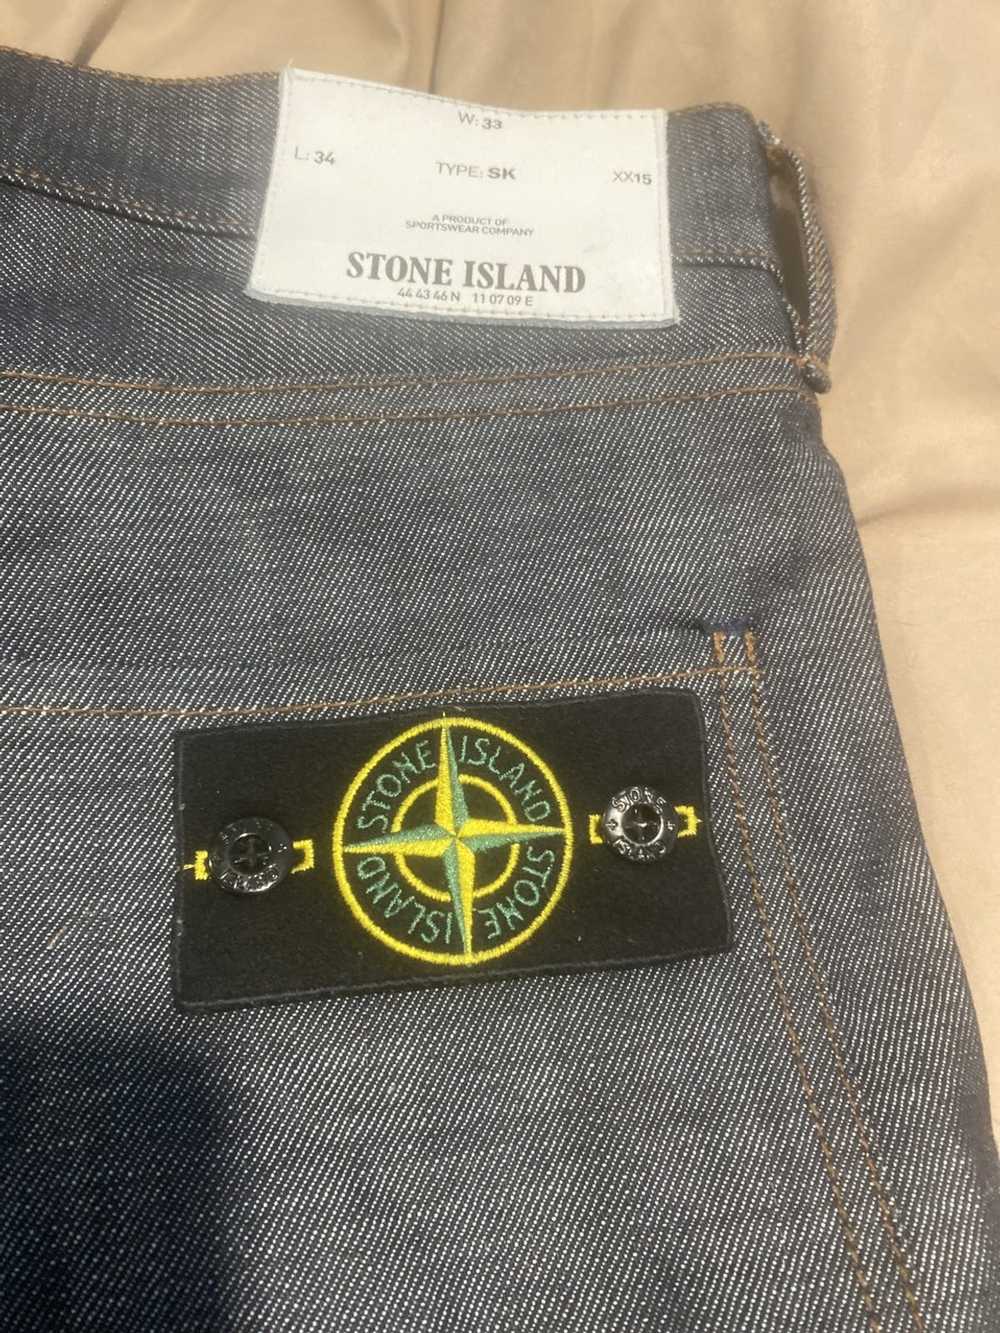 Stone Island Stone island denim jeans with patch … - image 7